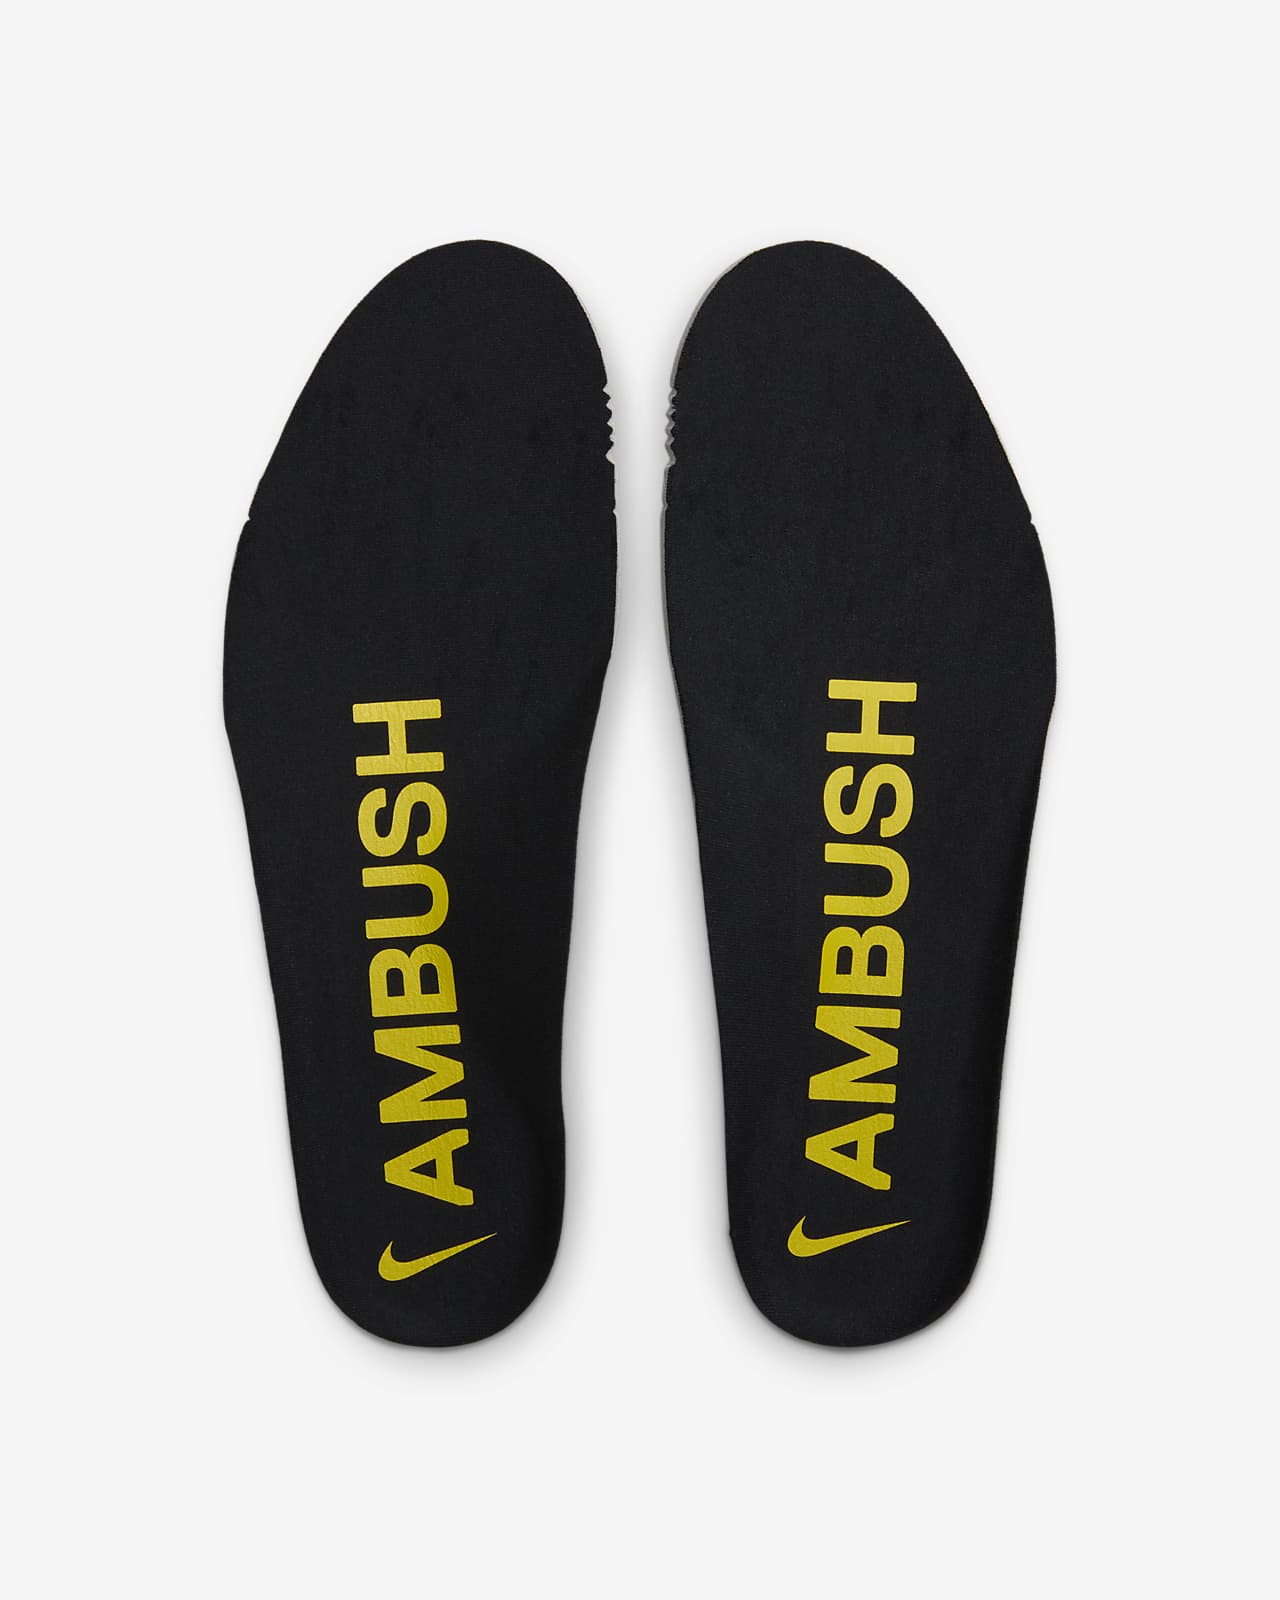 AMBUSH Nike Air More Uptempo Low Limestone Release Date